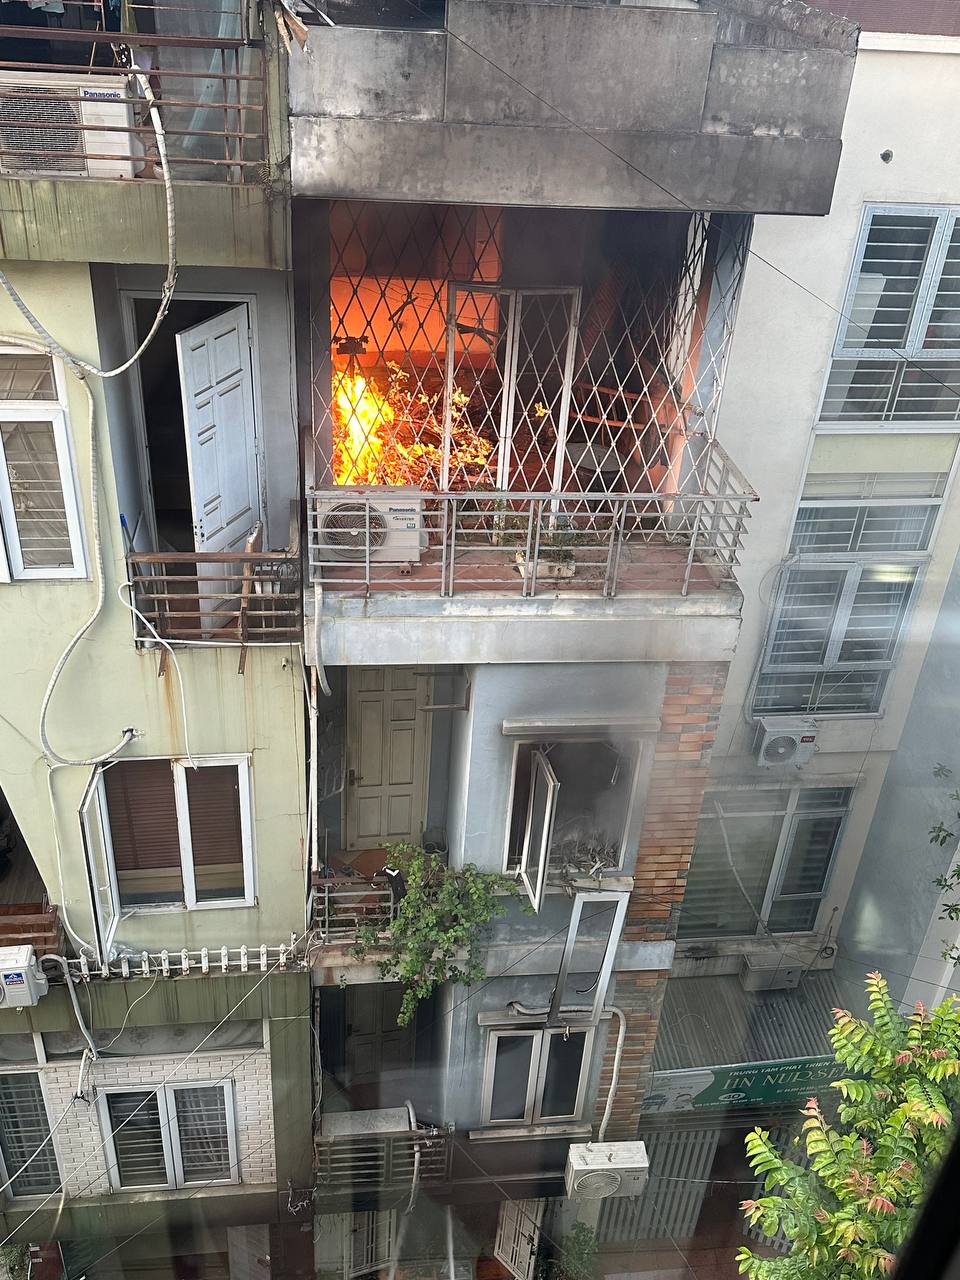 Nóng: Cháy lớn tại căn nhà 4 tầng ở Hà Nội, 2 bé trai cùng gia đình leo ban công thoát thân - Ảnh 1